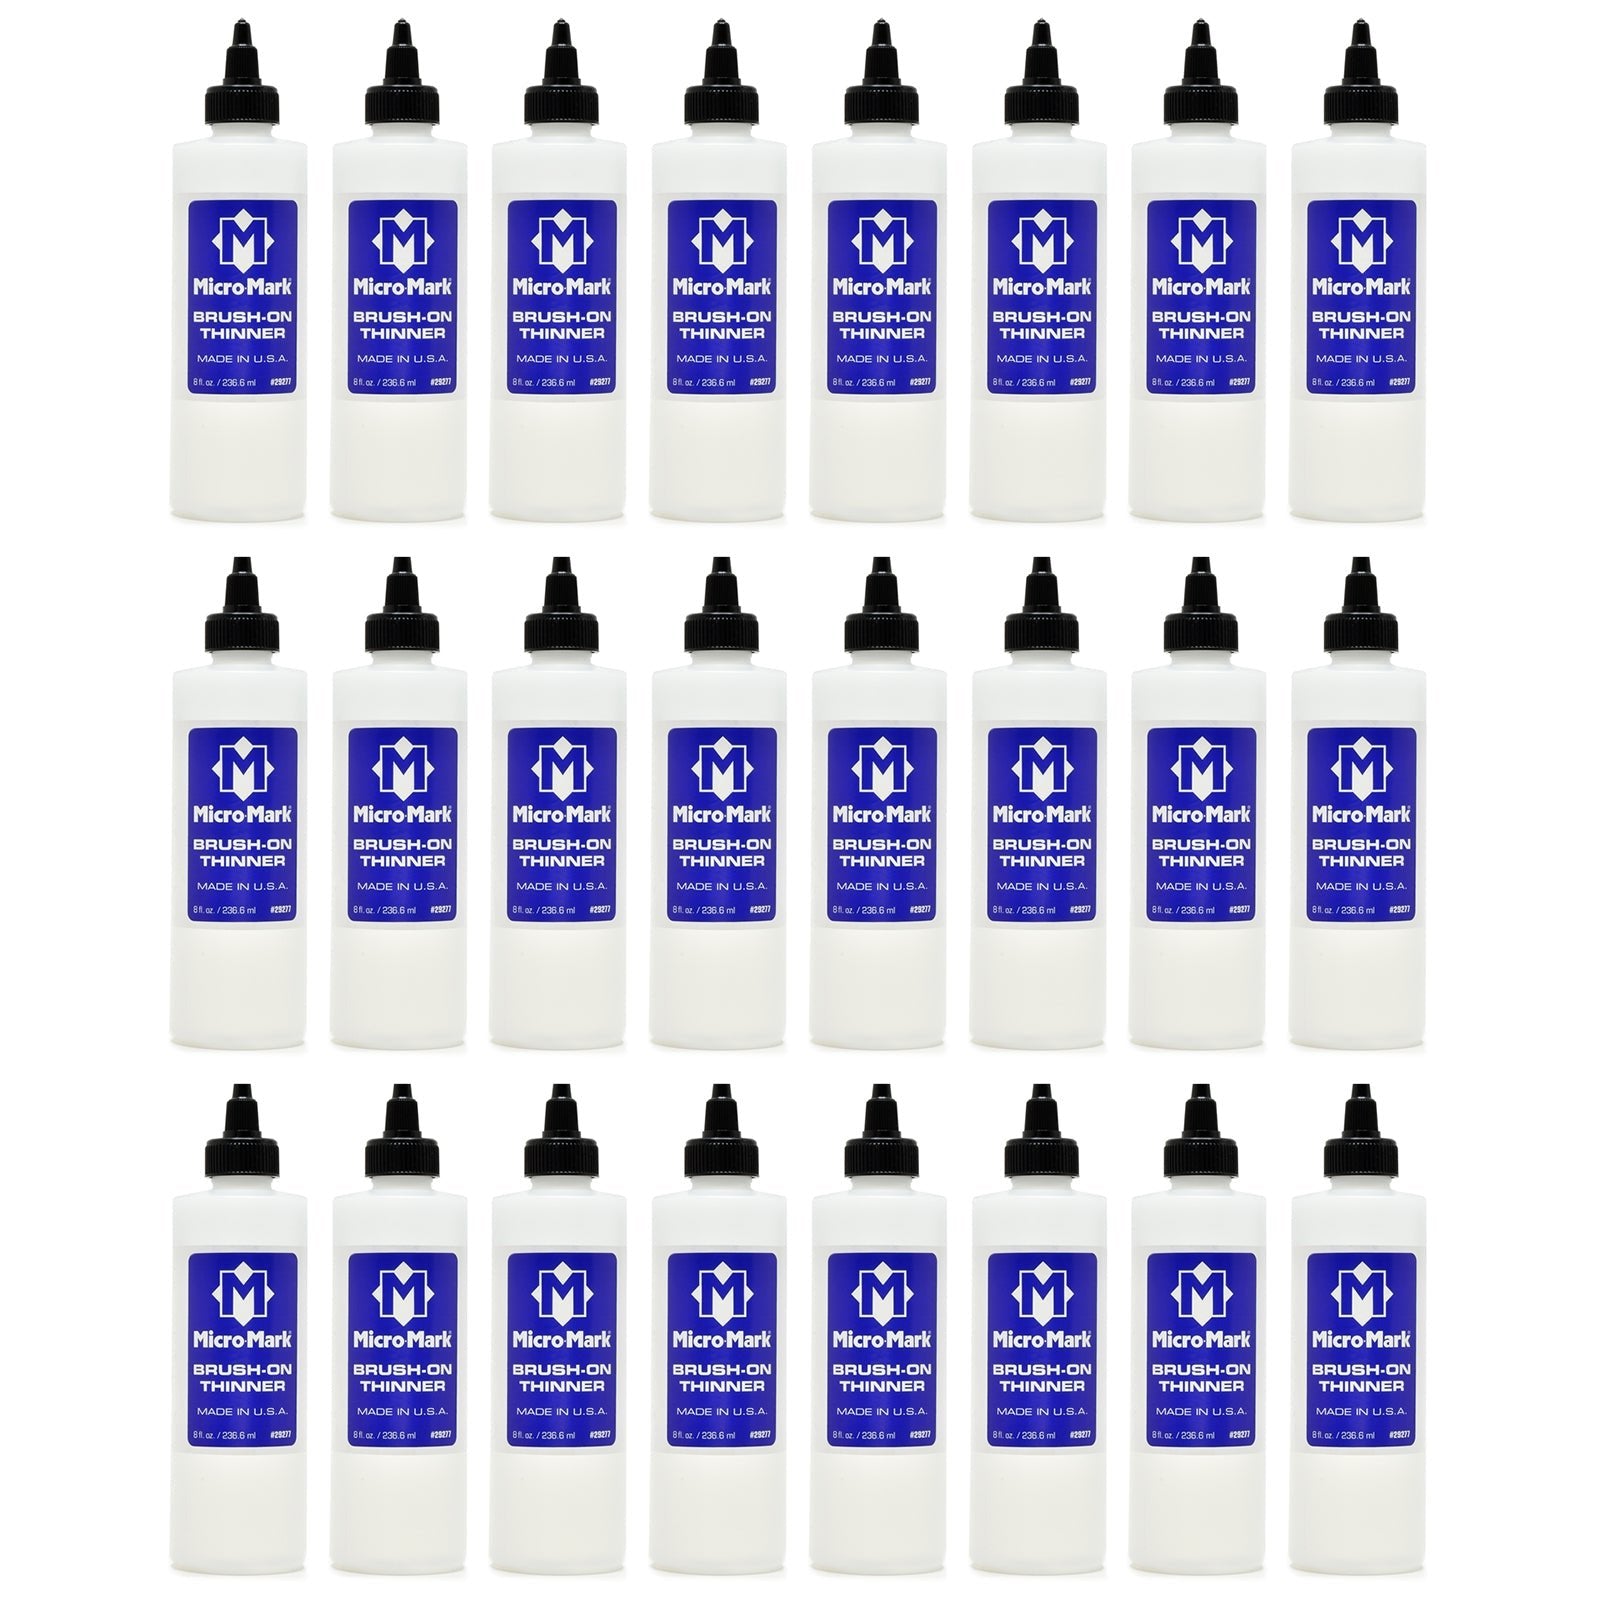 Micro-Mark Brush-on Thinner, 24 Pack Case 8 oz bottles